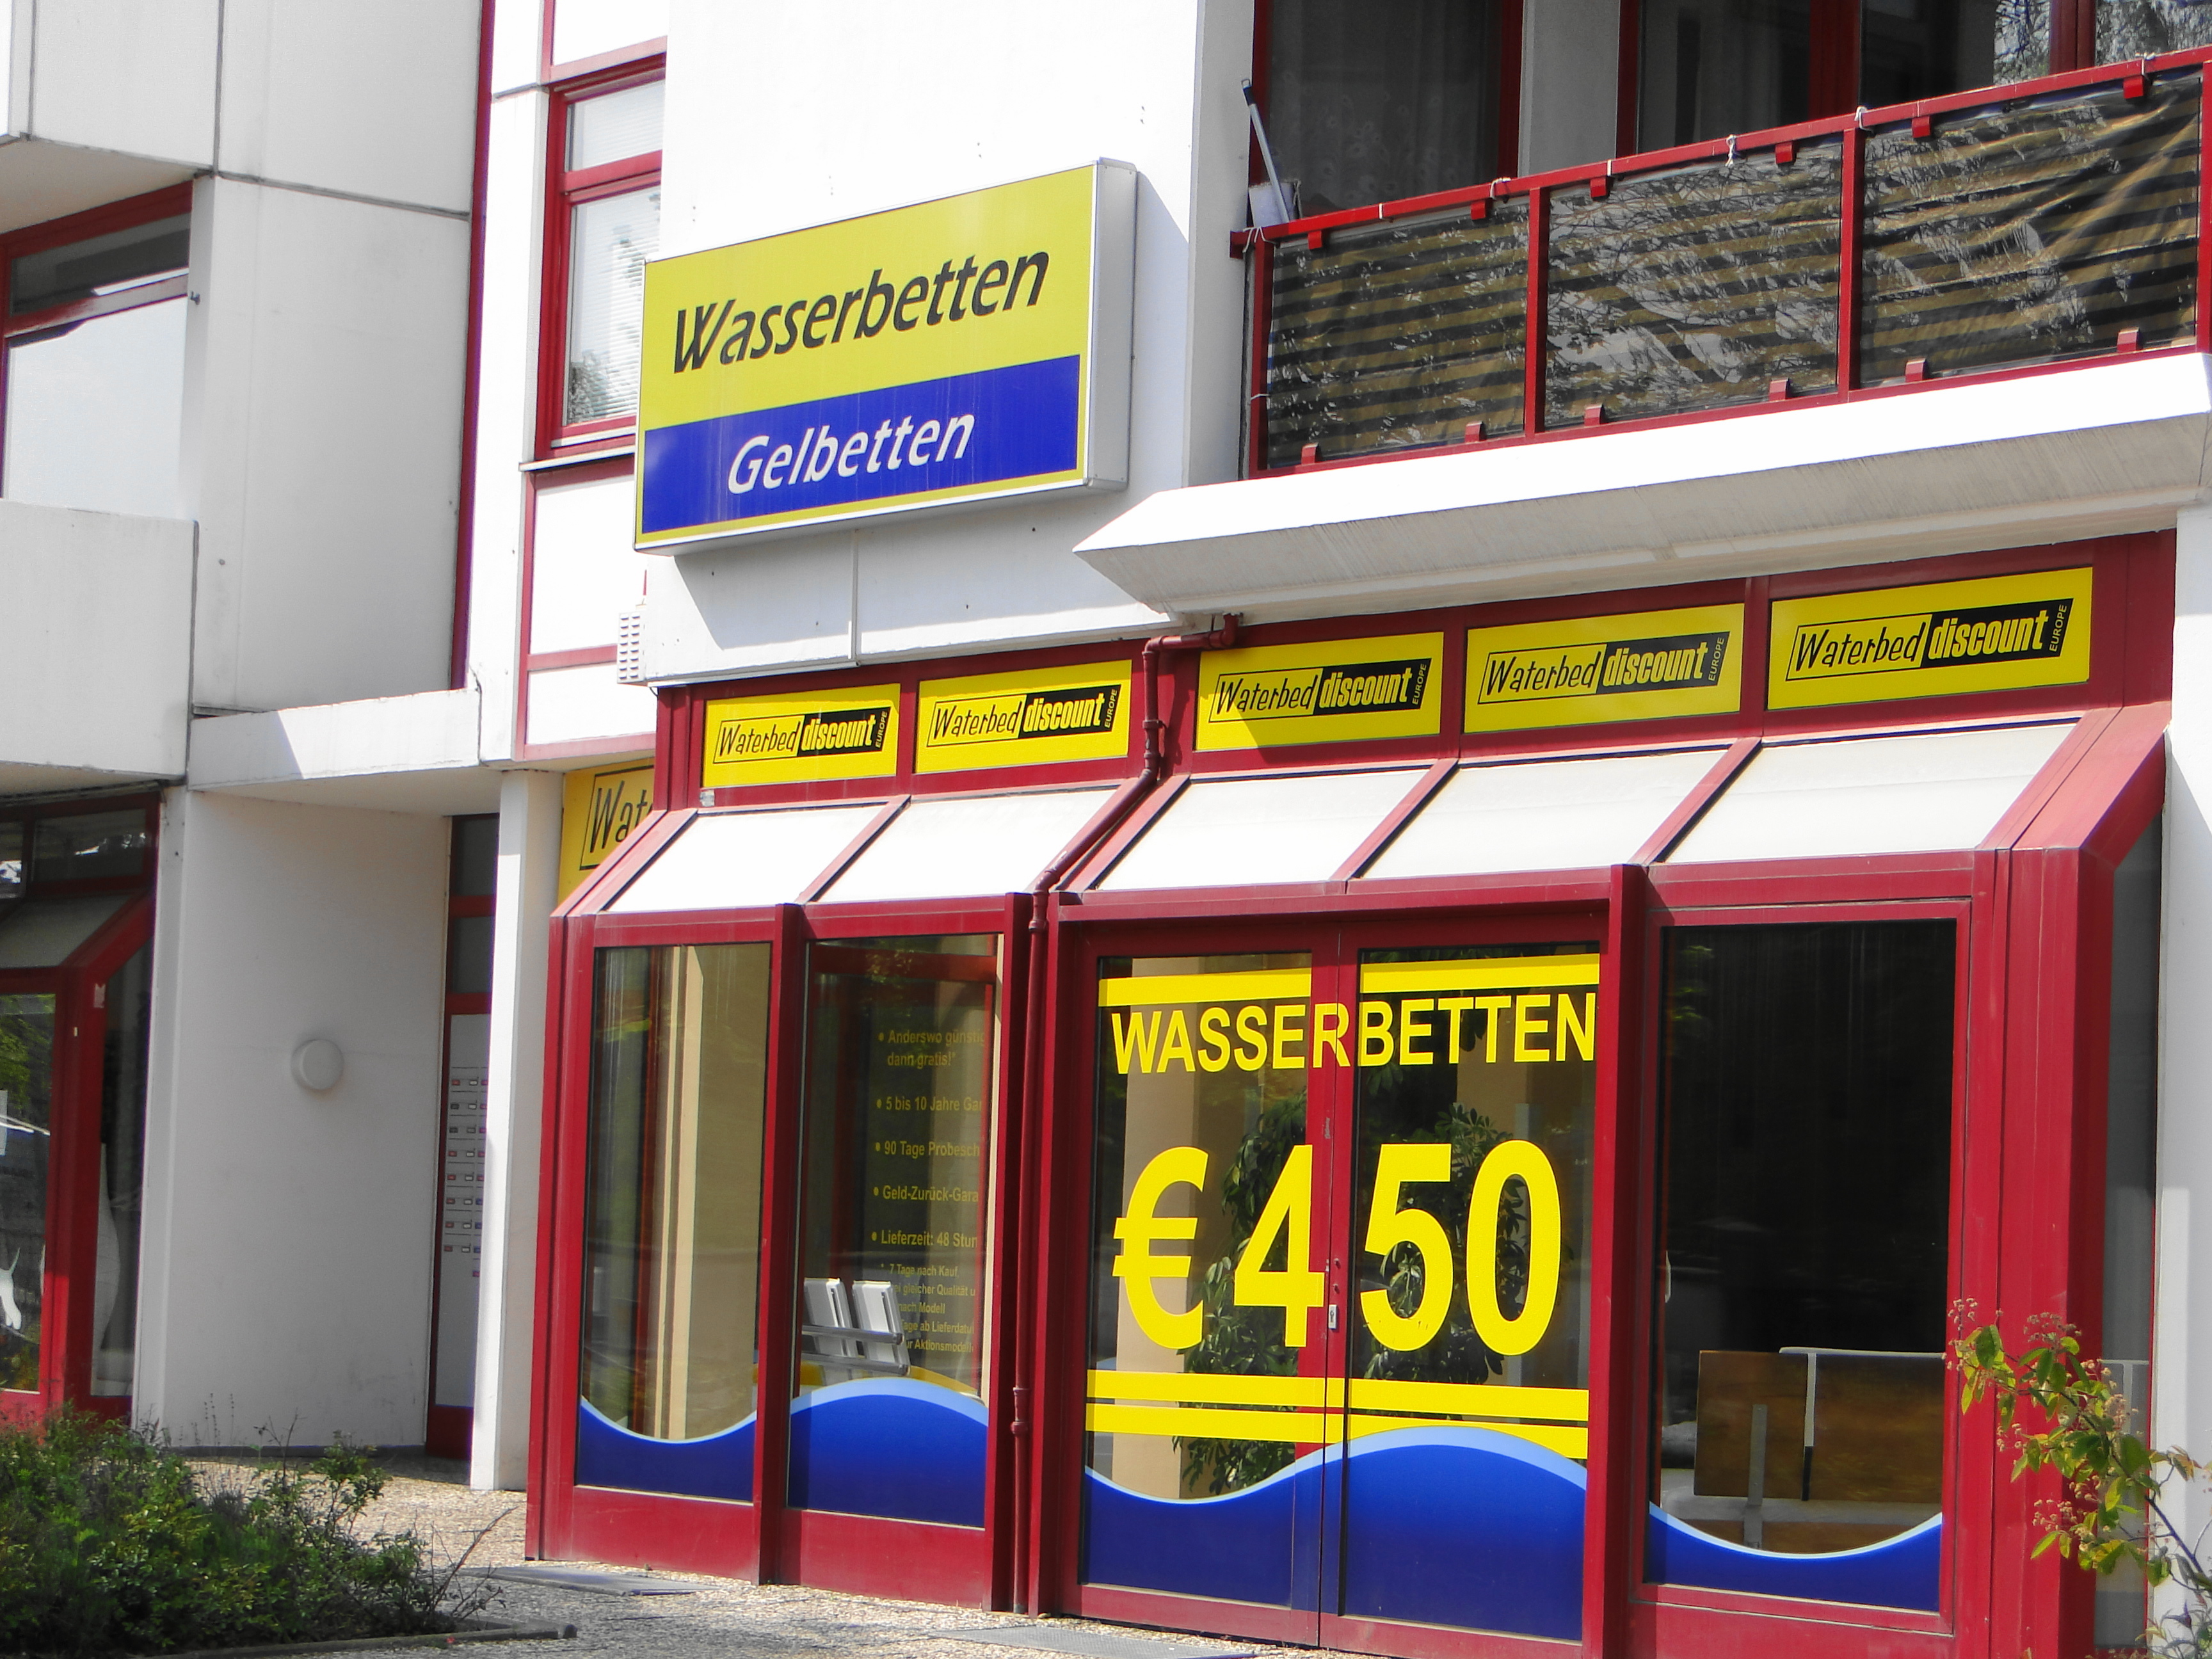 Waterbed Discount Göttingen im Posthof 4